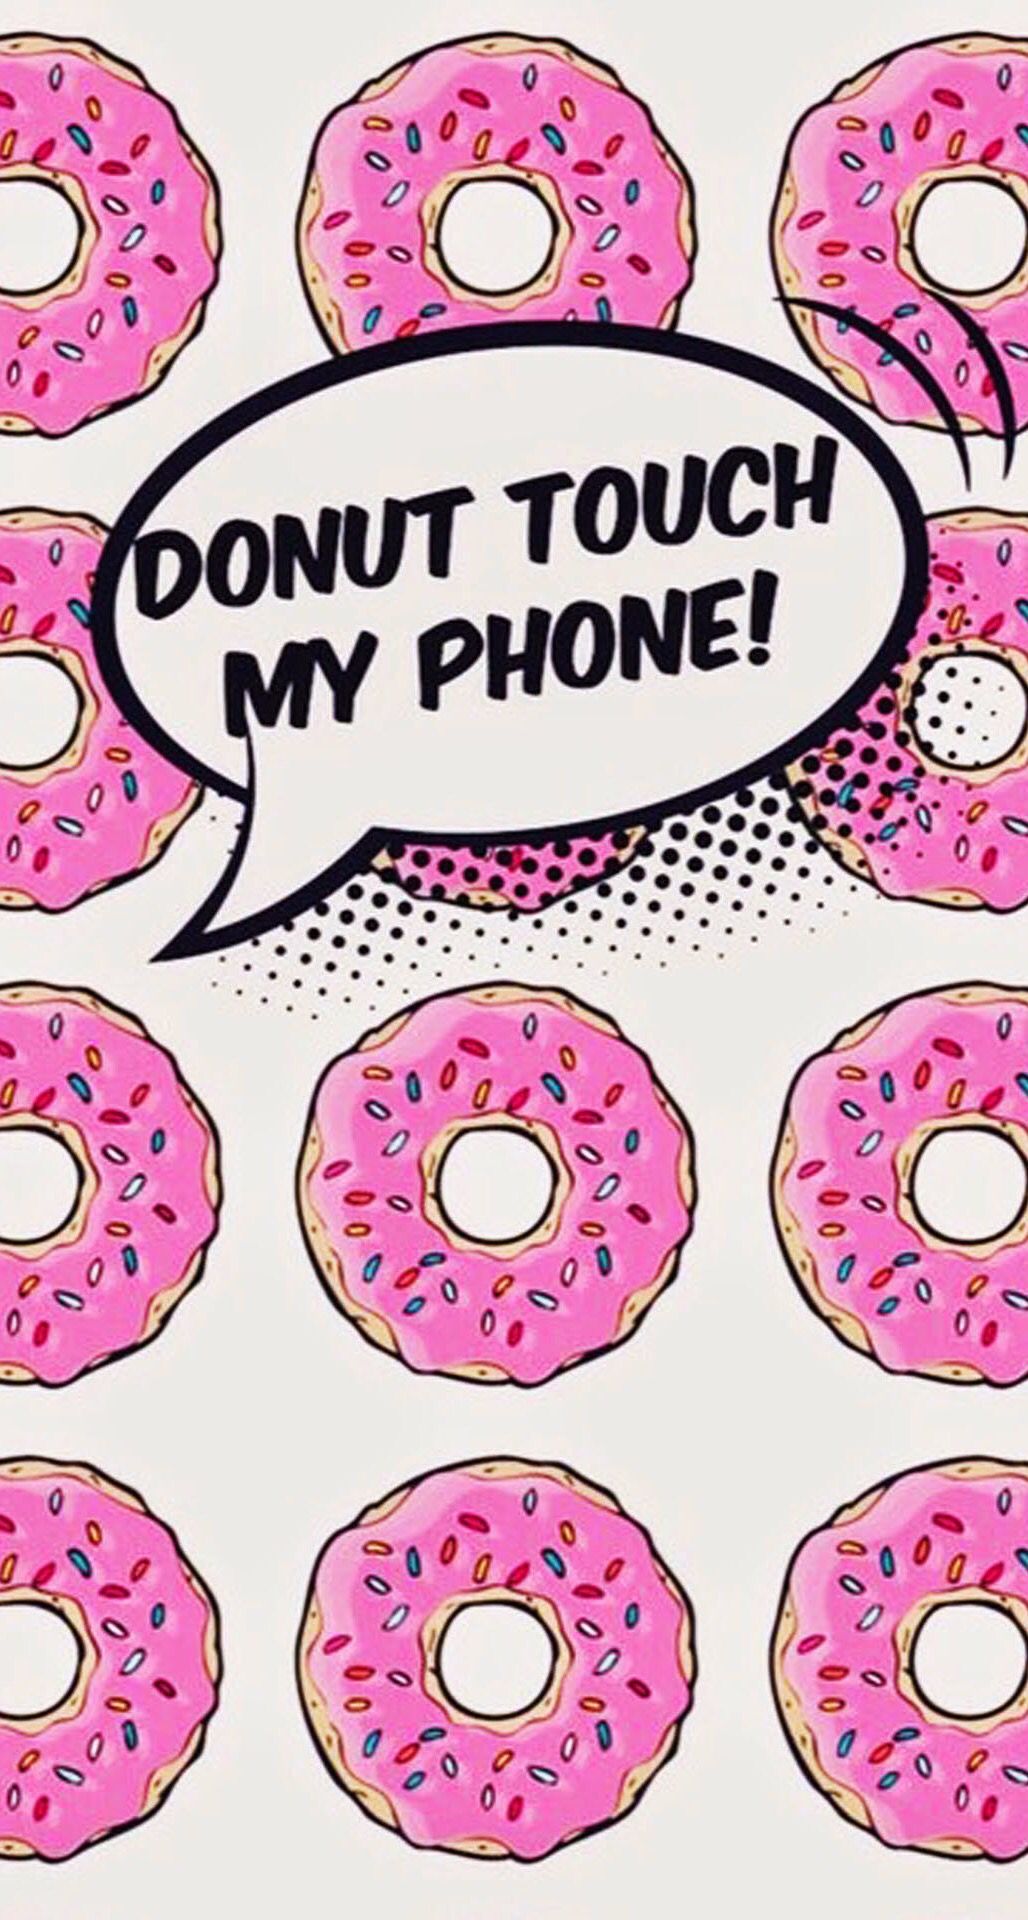 donut touche le fond d'écran de mon téléphone,rose,texte,police de caractère,modèle,conception